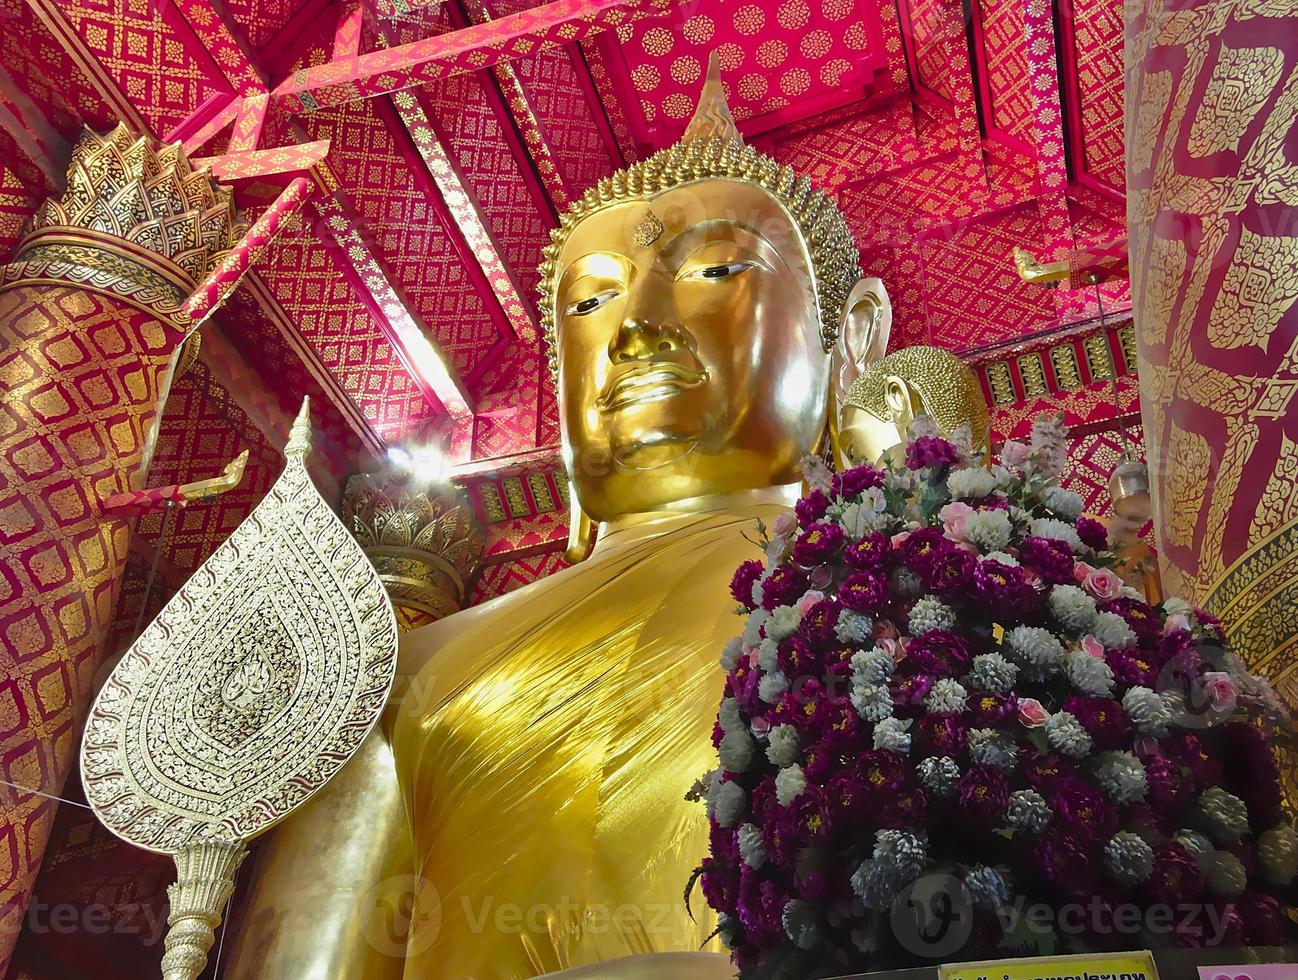 temple wat phanan choeng cette statue de bouddha très respectée est appelée luang pho thothai luang pho toby thaïlandais et sam pao kong chinois sam pao kongbychina. photo